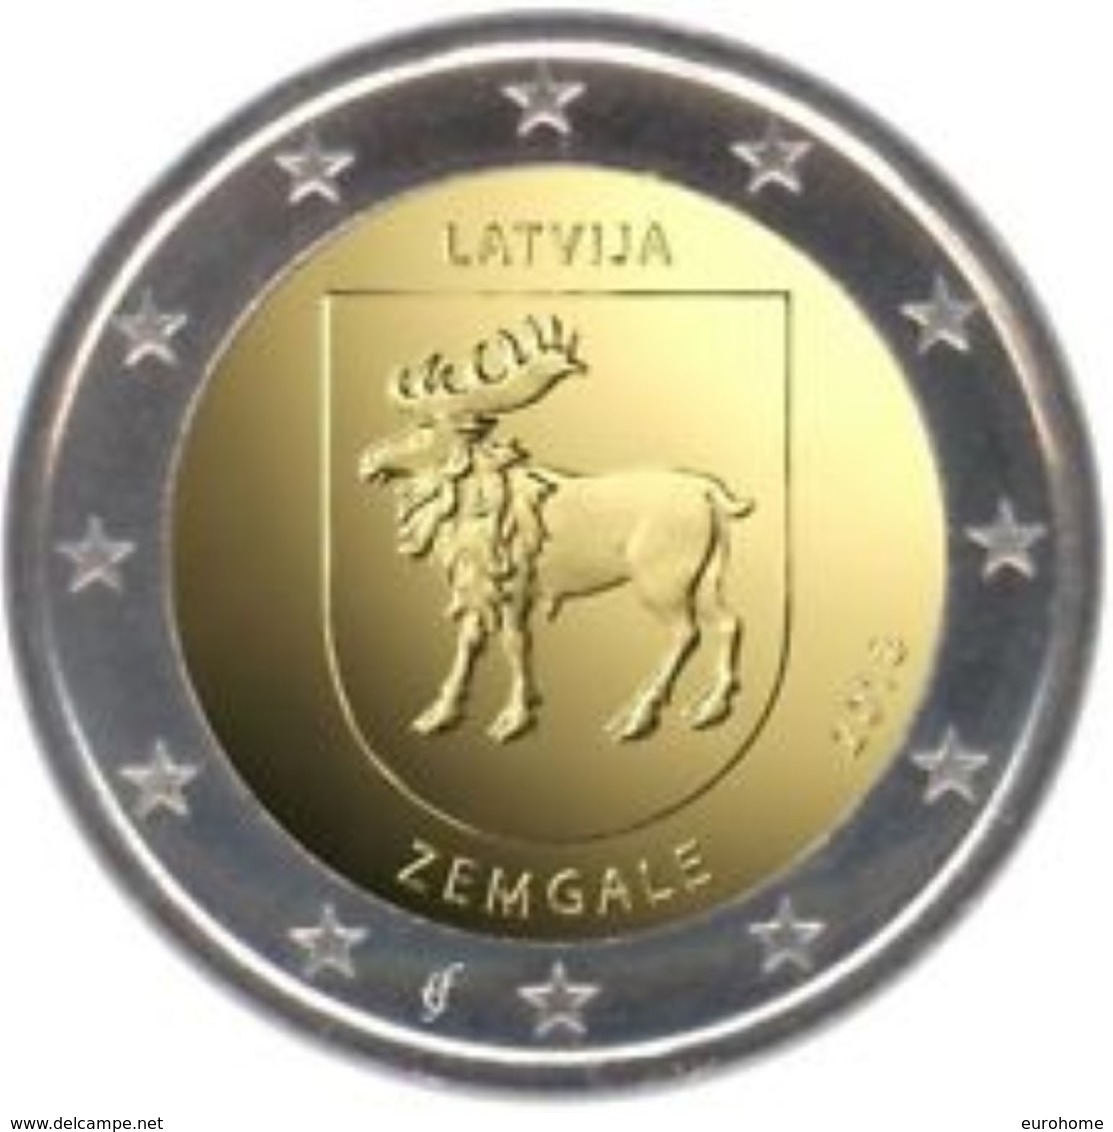 Letland-Lettonia 2018  2 Euro  Commemo  Regio Zemgale   UNC Uit De Rol  UNC Du Rouleaux  !! Leverbaar - Livrable !! - Lettland